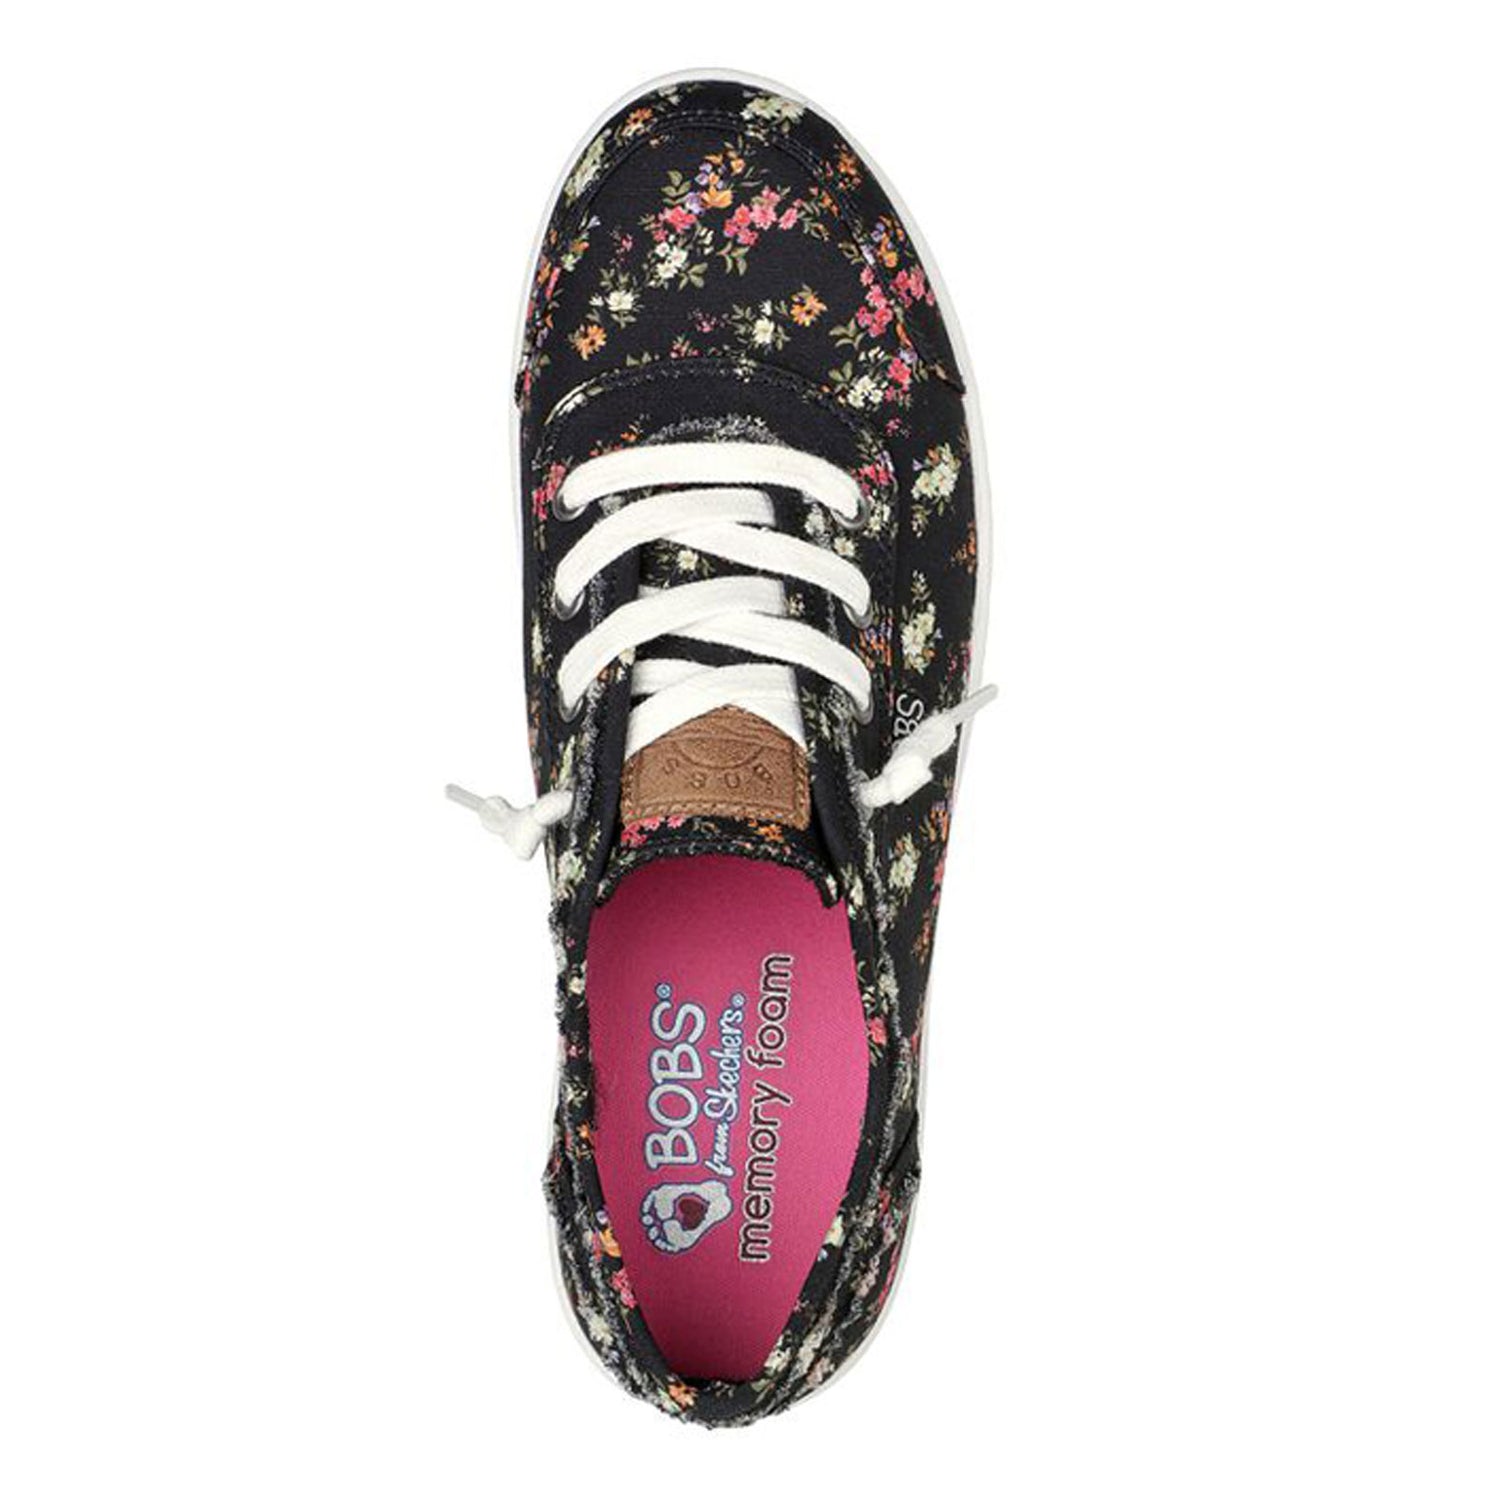 Peltz Shoes  Women's Skechers BOBS B Cute - Floral Kiss Sneaker BLACK MULTI 113849-BKMT